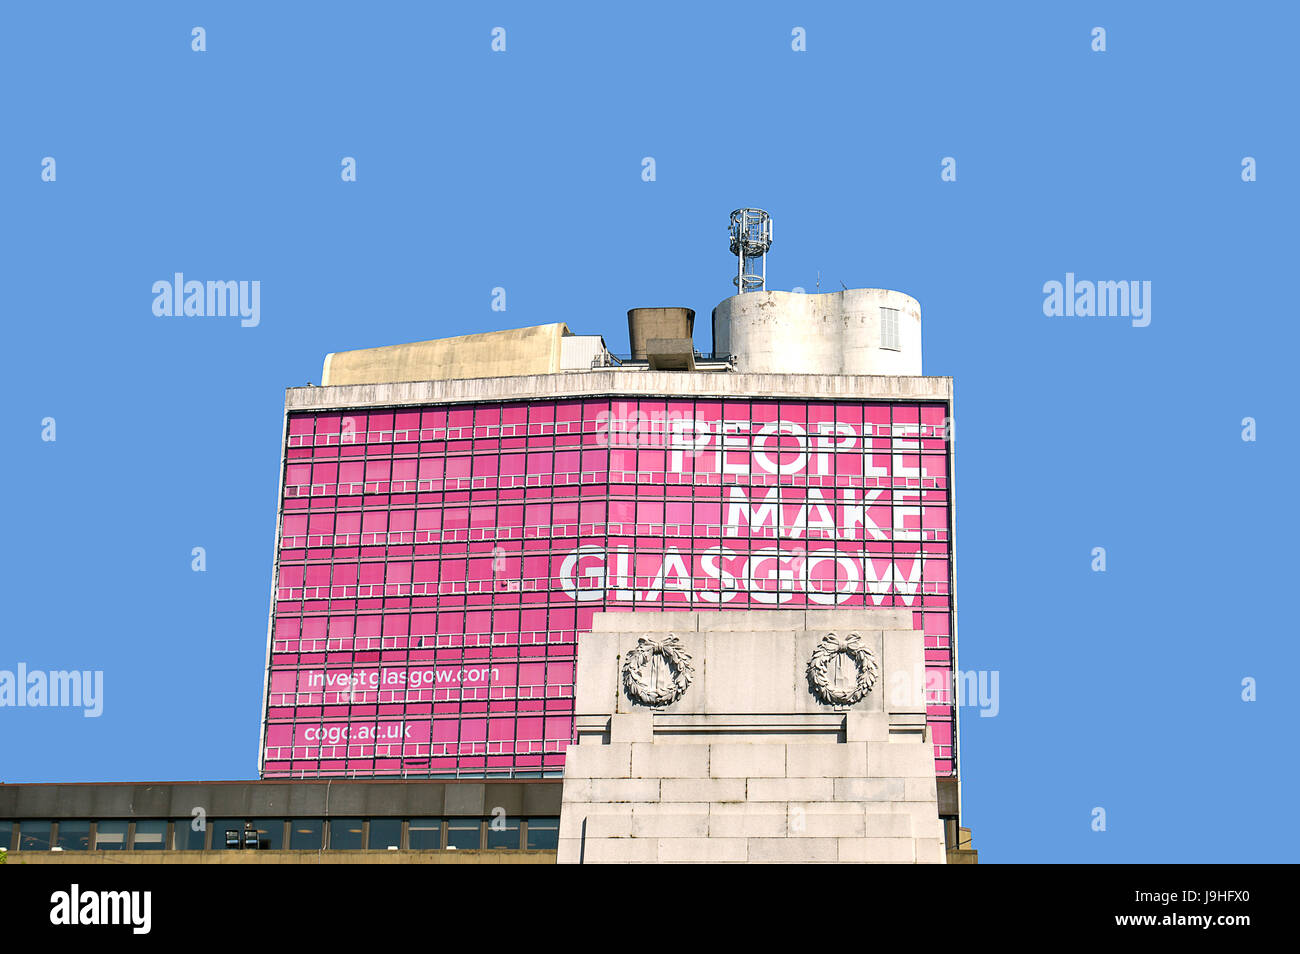 GLASGOW, SCOZIA - 3 Maggio 2017: Una vista sopra il cenotafio in George Square e alla città in slogan pubblicitario dal 2013, "Le persone fanno Glasgow' visualizzata Foto Stock